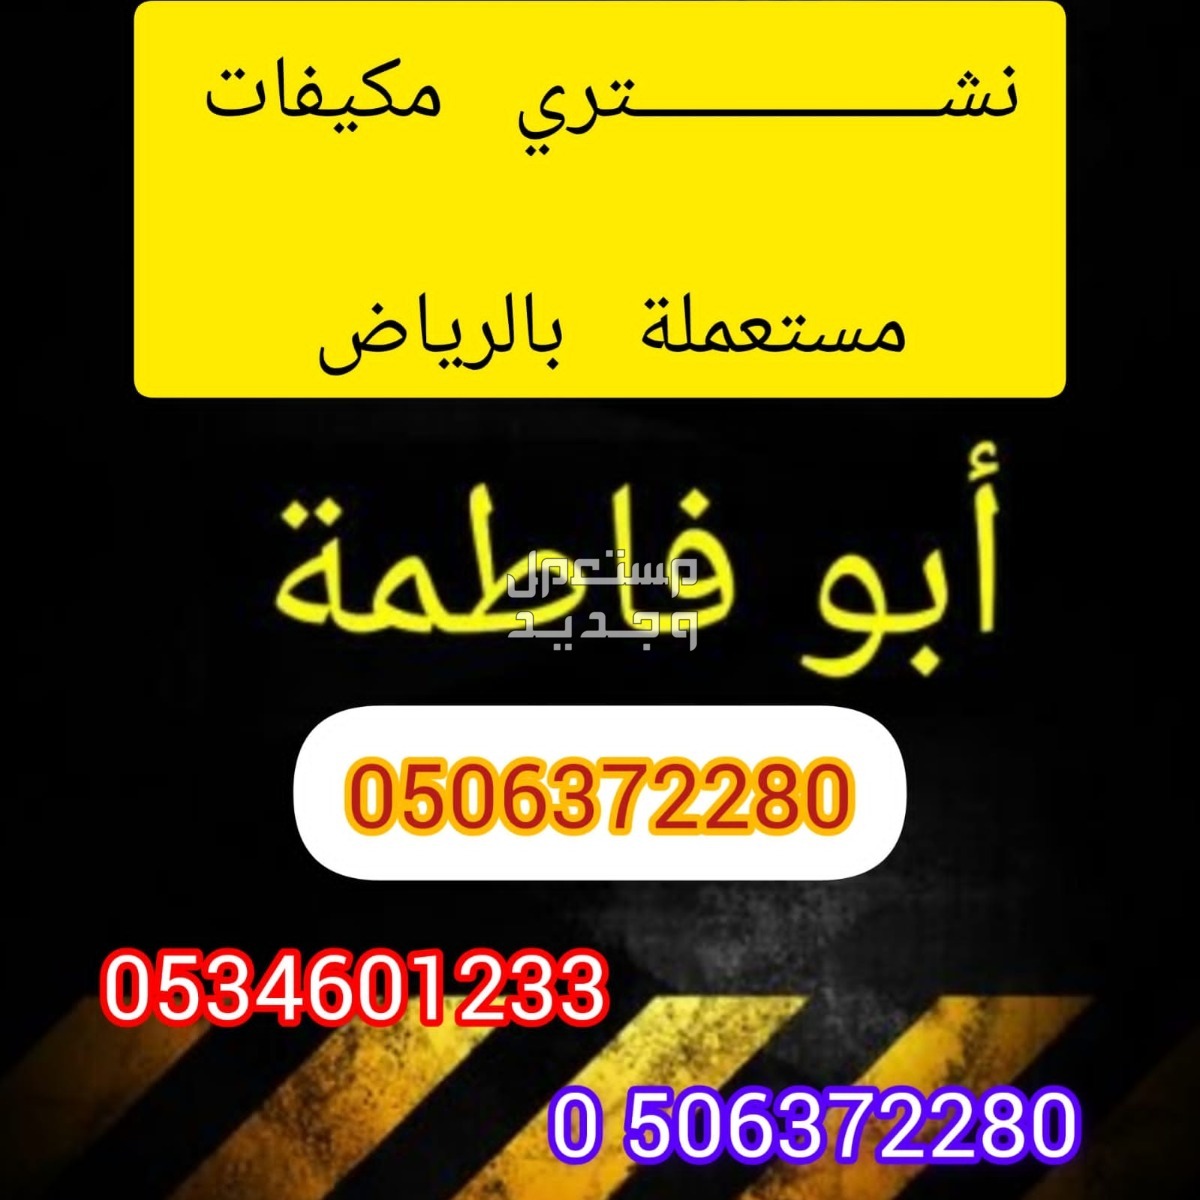 شراء مكيفات مستعملة شرق الرياض شراء اثاث ومكيفات مستعملة بالرياض 0506372280